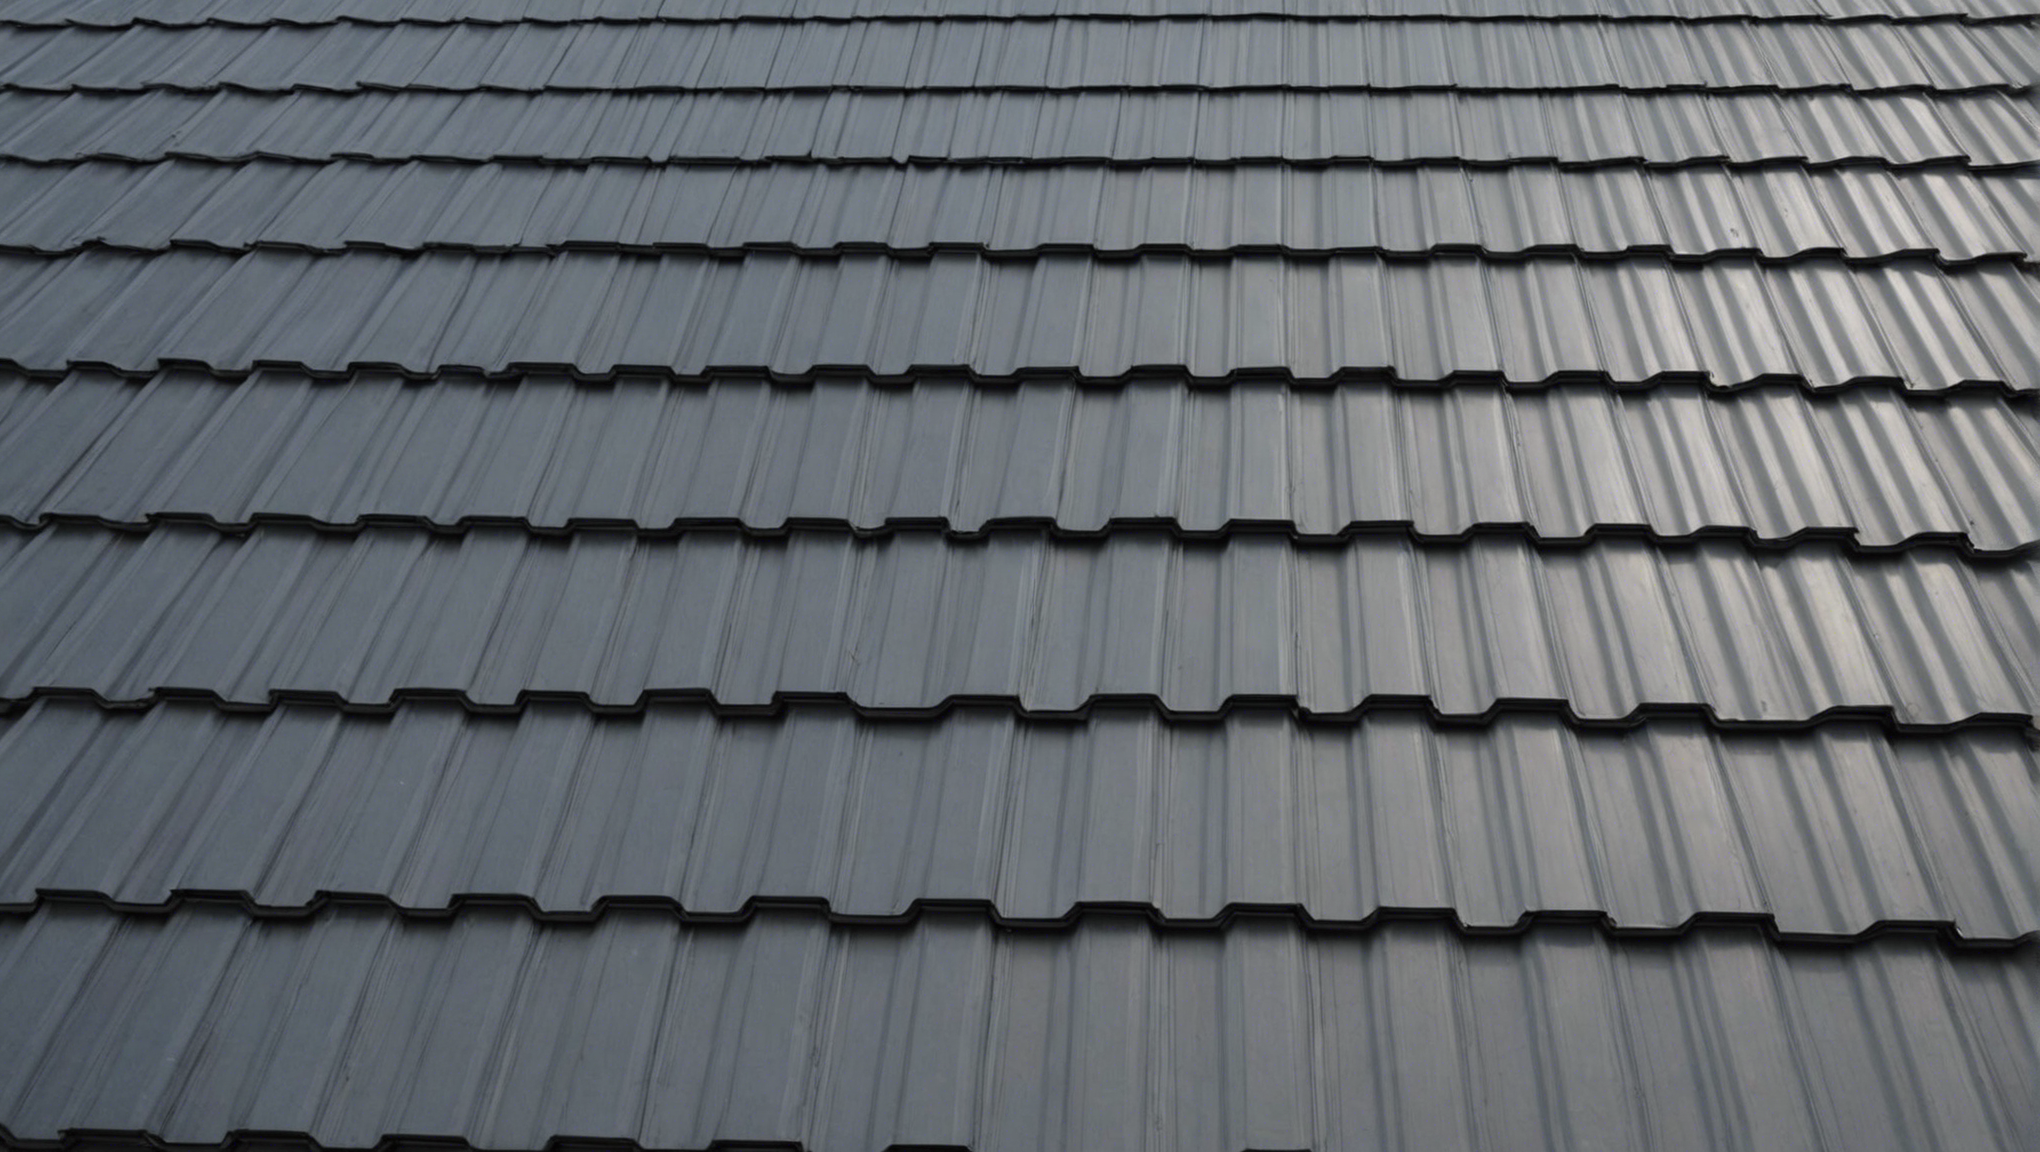 découvrez les avantages et inconvénients d'une toiture en bac acier pour faire le meilleur choix pour votre habitation.